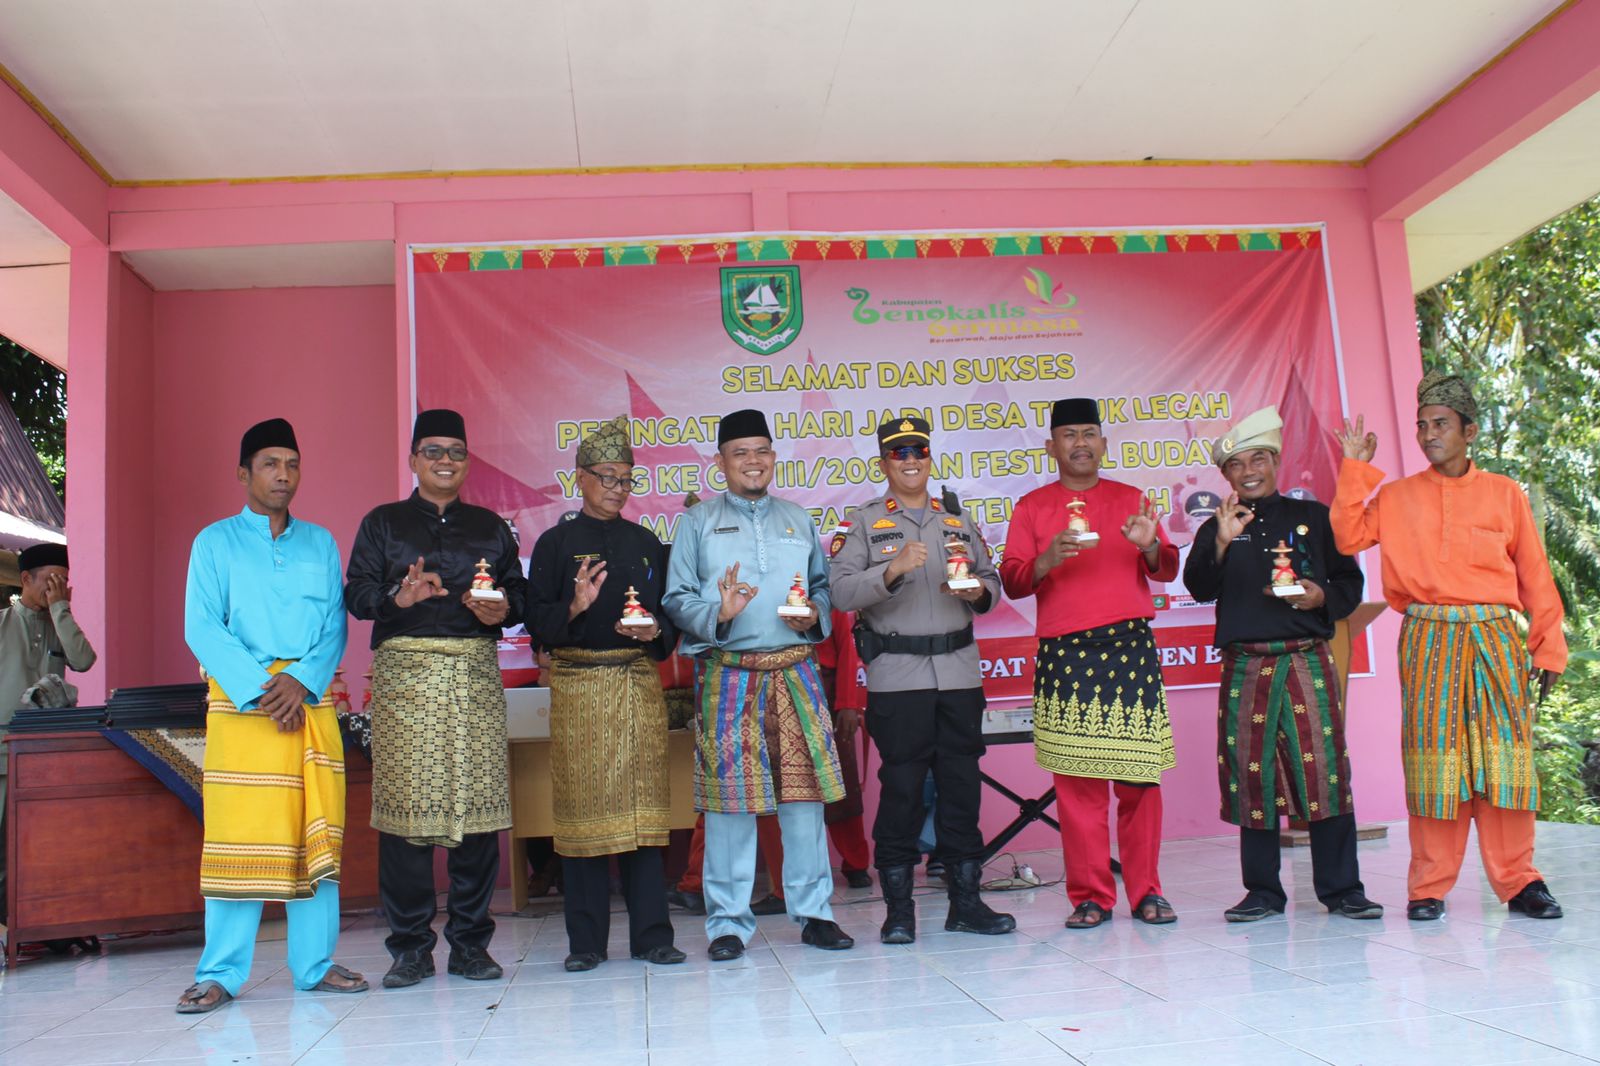 Camat Rupat Hariadi Buka Festifal Mandi Safar di Desa Teluk Lecah Tahun 2023